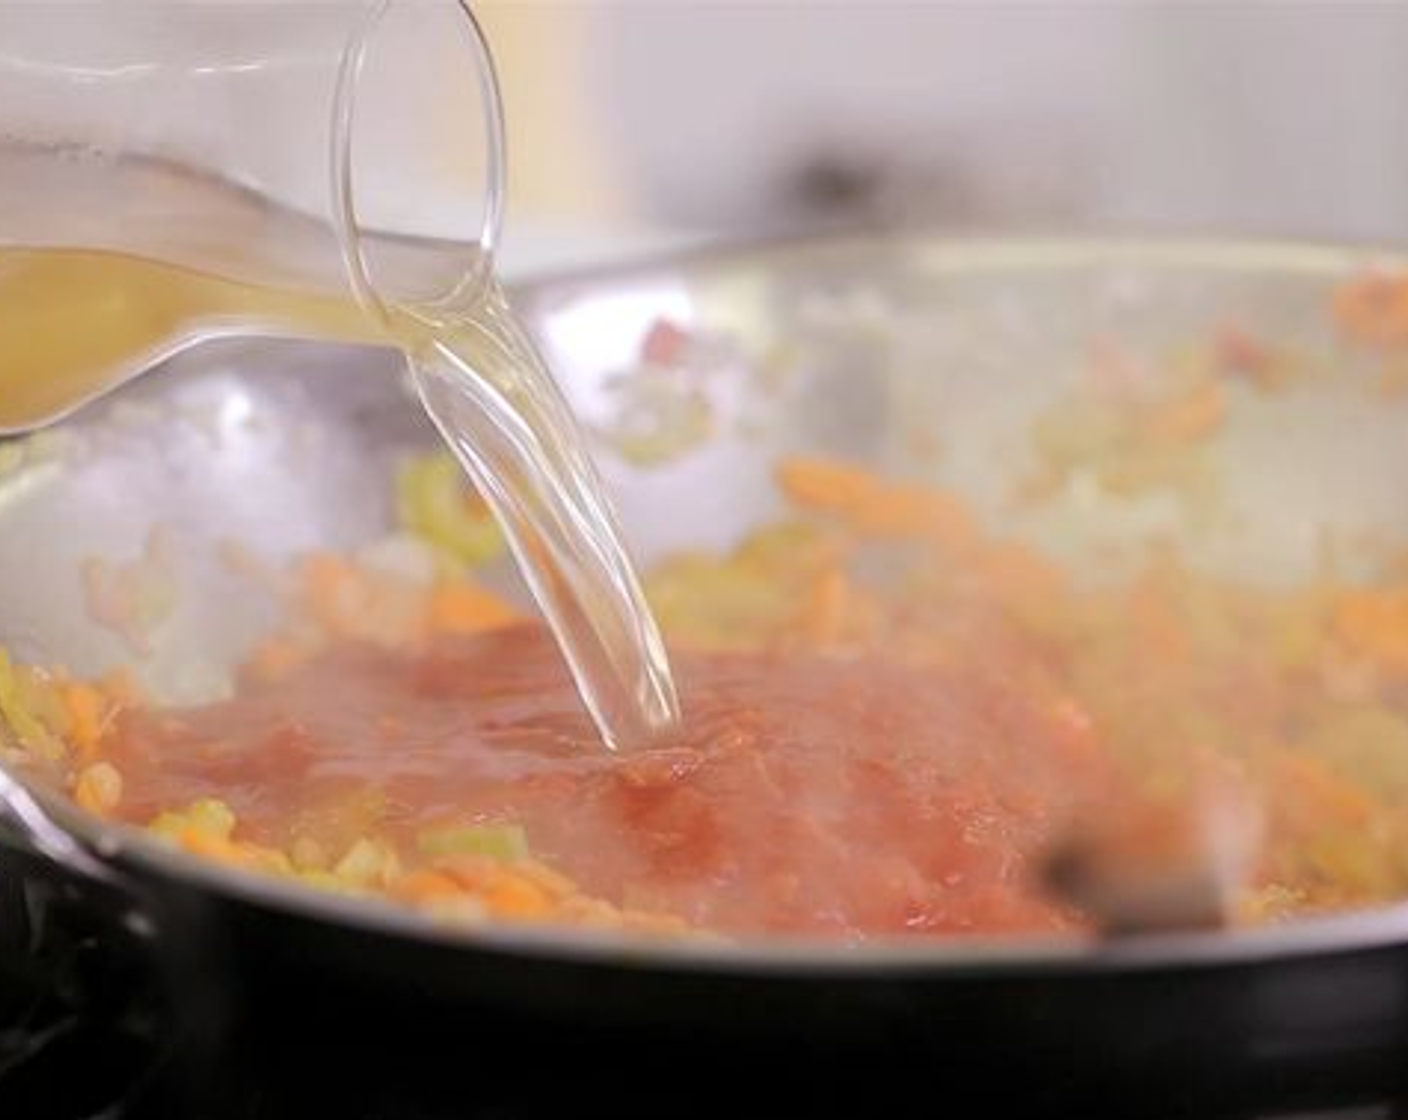 Schritt 3 Anschliessend das Olivenöl (1 EL) im Wok erhitzen, den Speck zugeben und anschwitzen. Danach die Karotten, den Stangensellerie, Knoblauch und die Zwiebeln in den Wok geben und anbraten. Nun die Tomaten Passata (1 EL) hinzufügen und kurz mit anbraten. Als nächstes die Kartoffel- und Pelati Pomodoro (400 g) sowie den restlichen Petersilienbund und die Bouillon (1.5 L) zugeben. Das Ganze zum Kochen bringen.